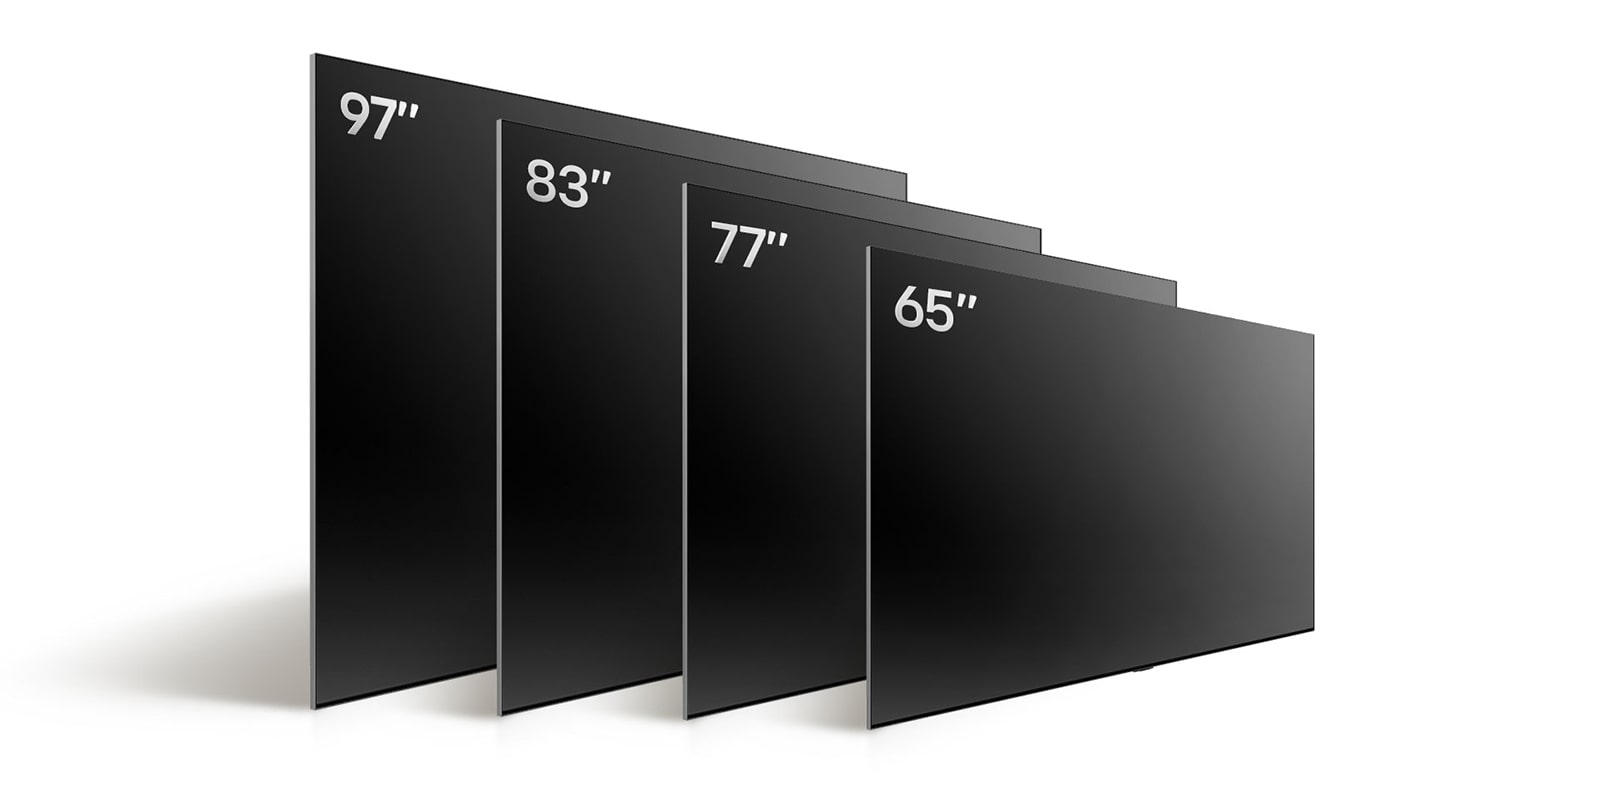 Lyginami įvairių dydžių LG OLED TV, OLED evo M4: matomas OLED evo M4 83 in, OLED evo M4 77 in, OLED evo M4 65 in, ir LG SIGNATURE OLED m4 97 in.